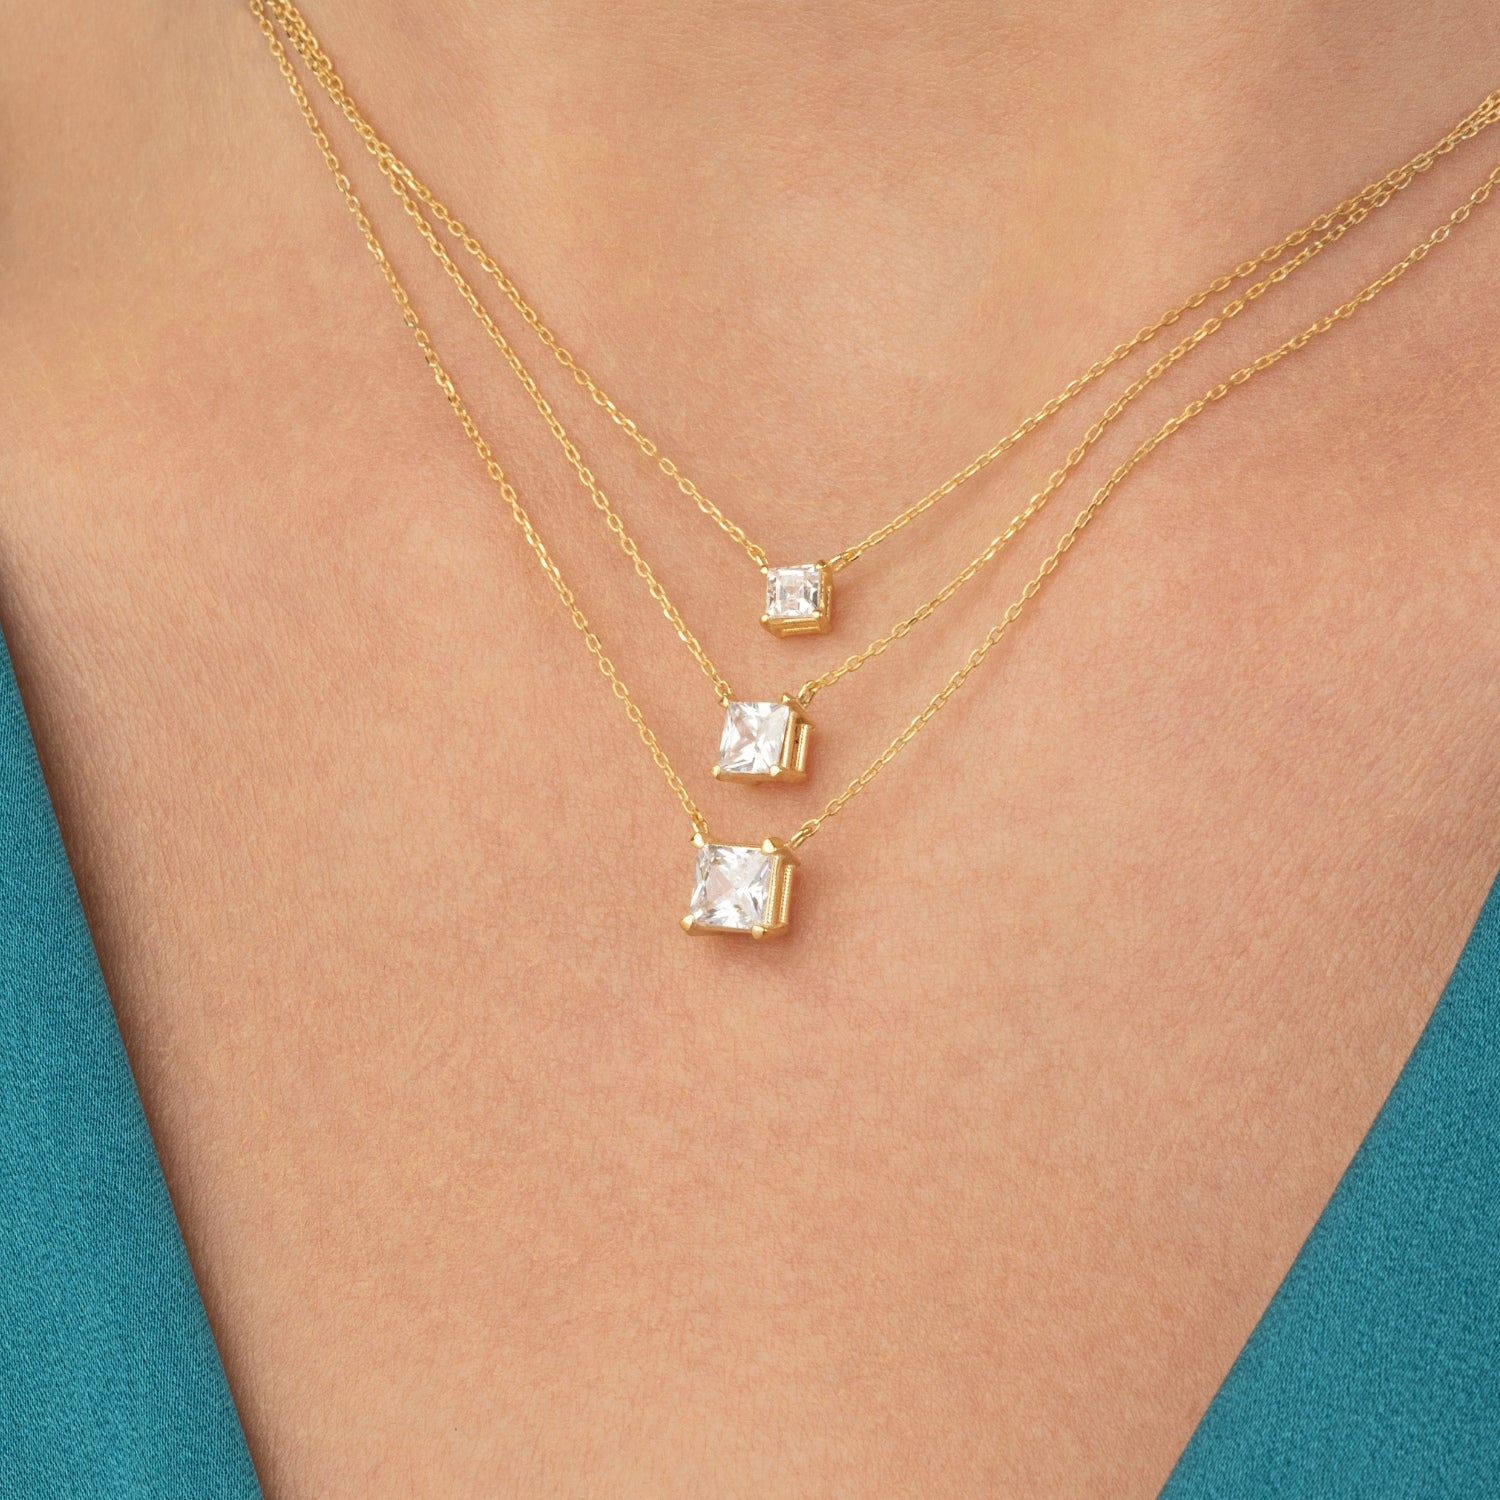 Princess Cut Diamond Solitaire Necklace